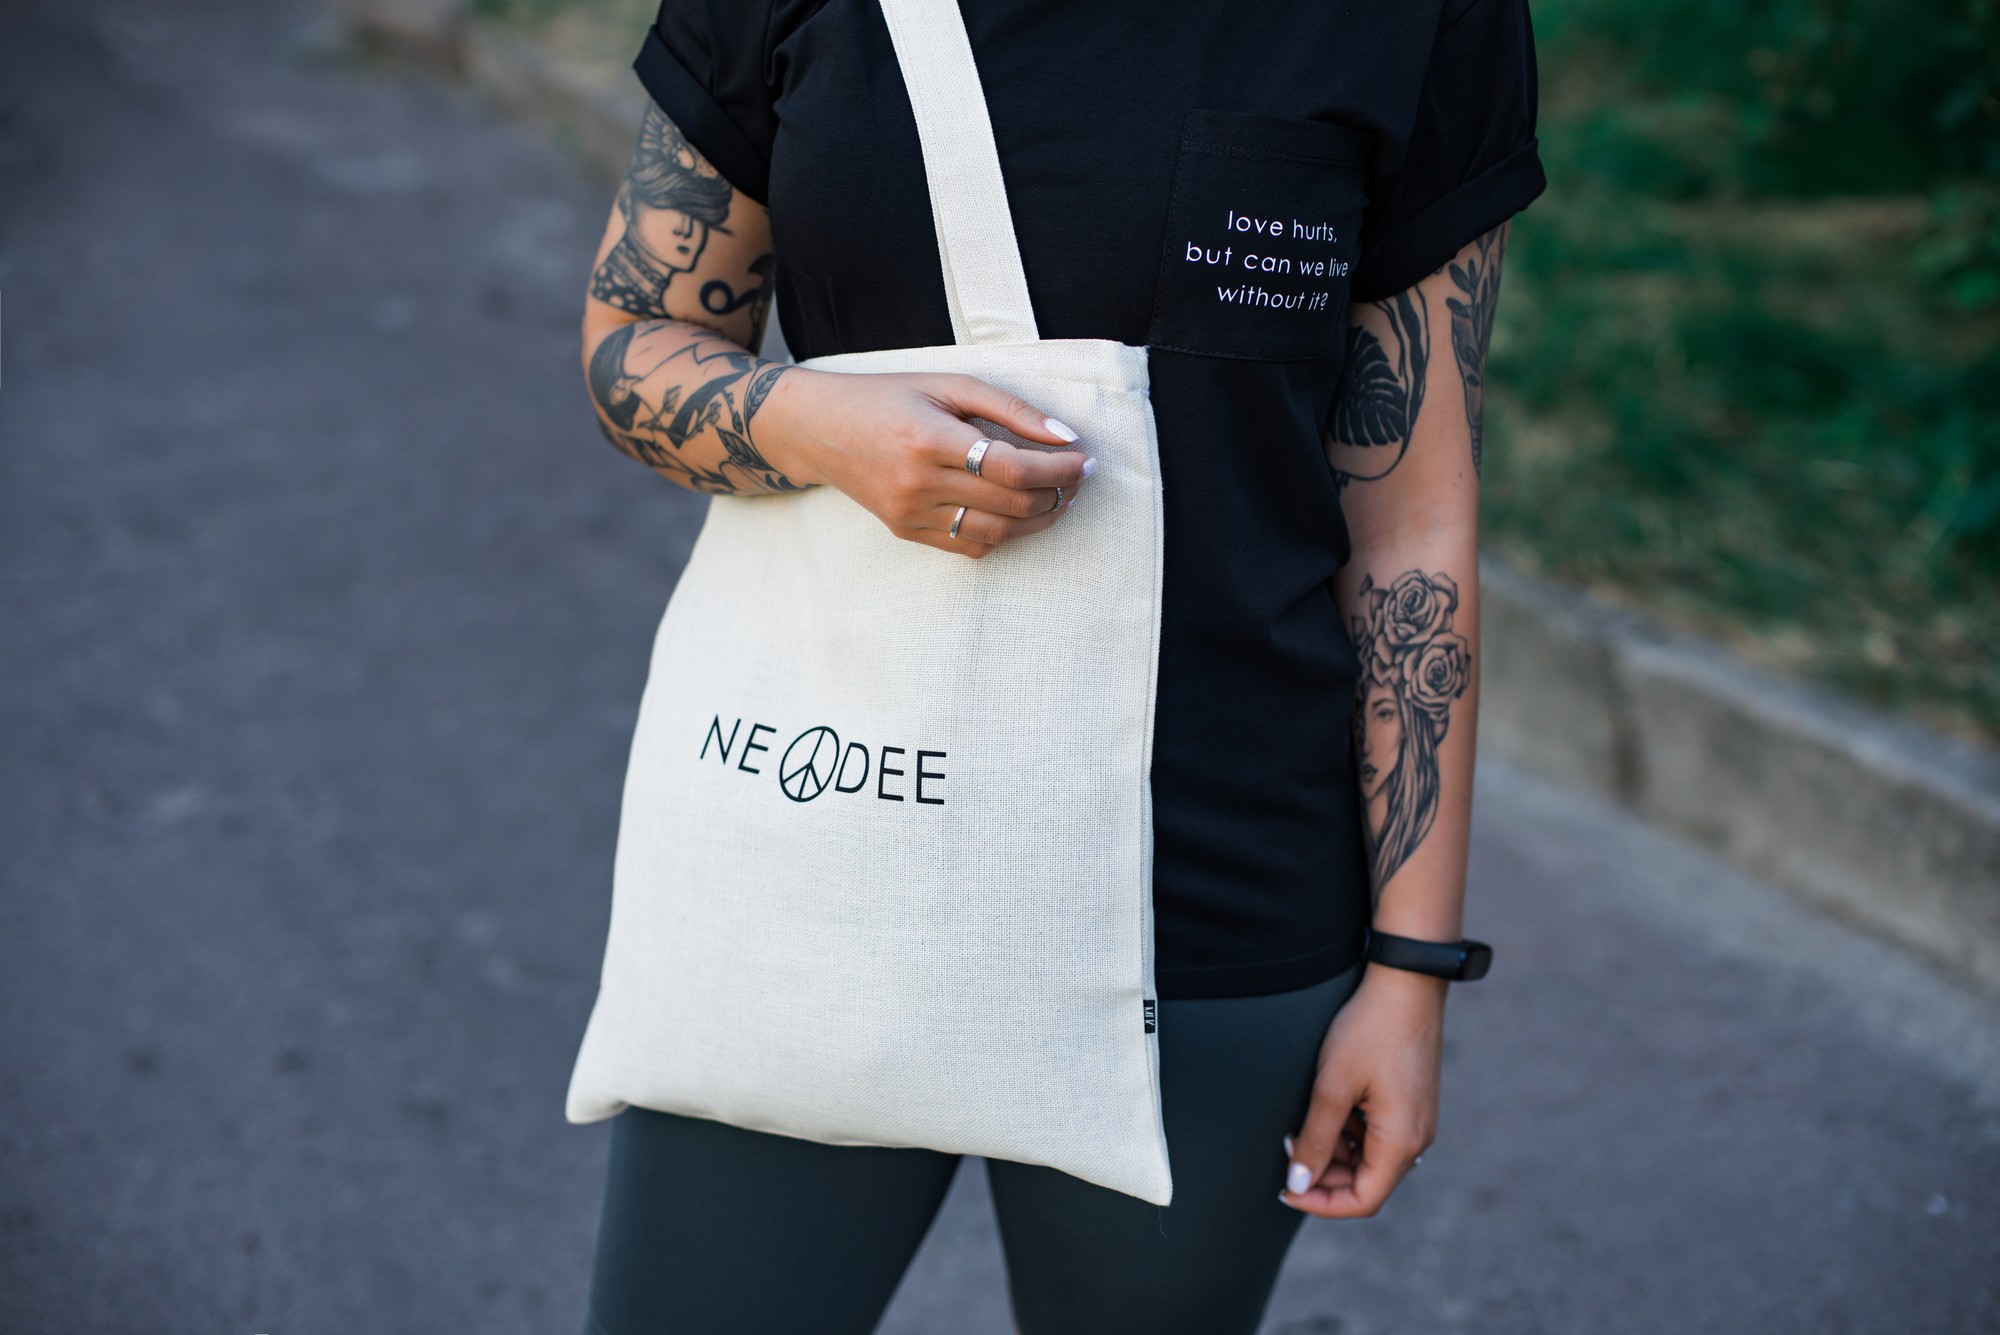 BAG | Eco-bag | Shopper